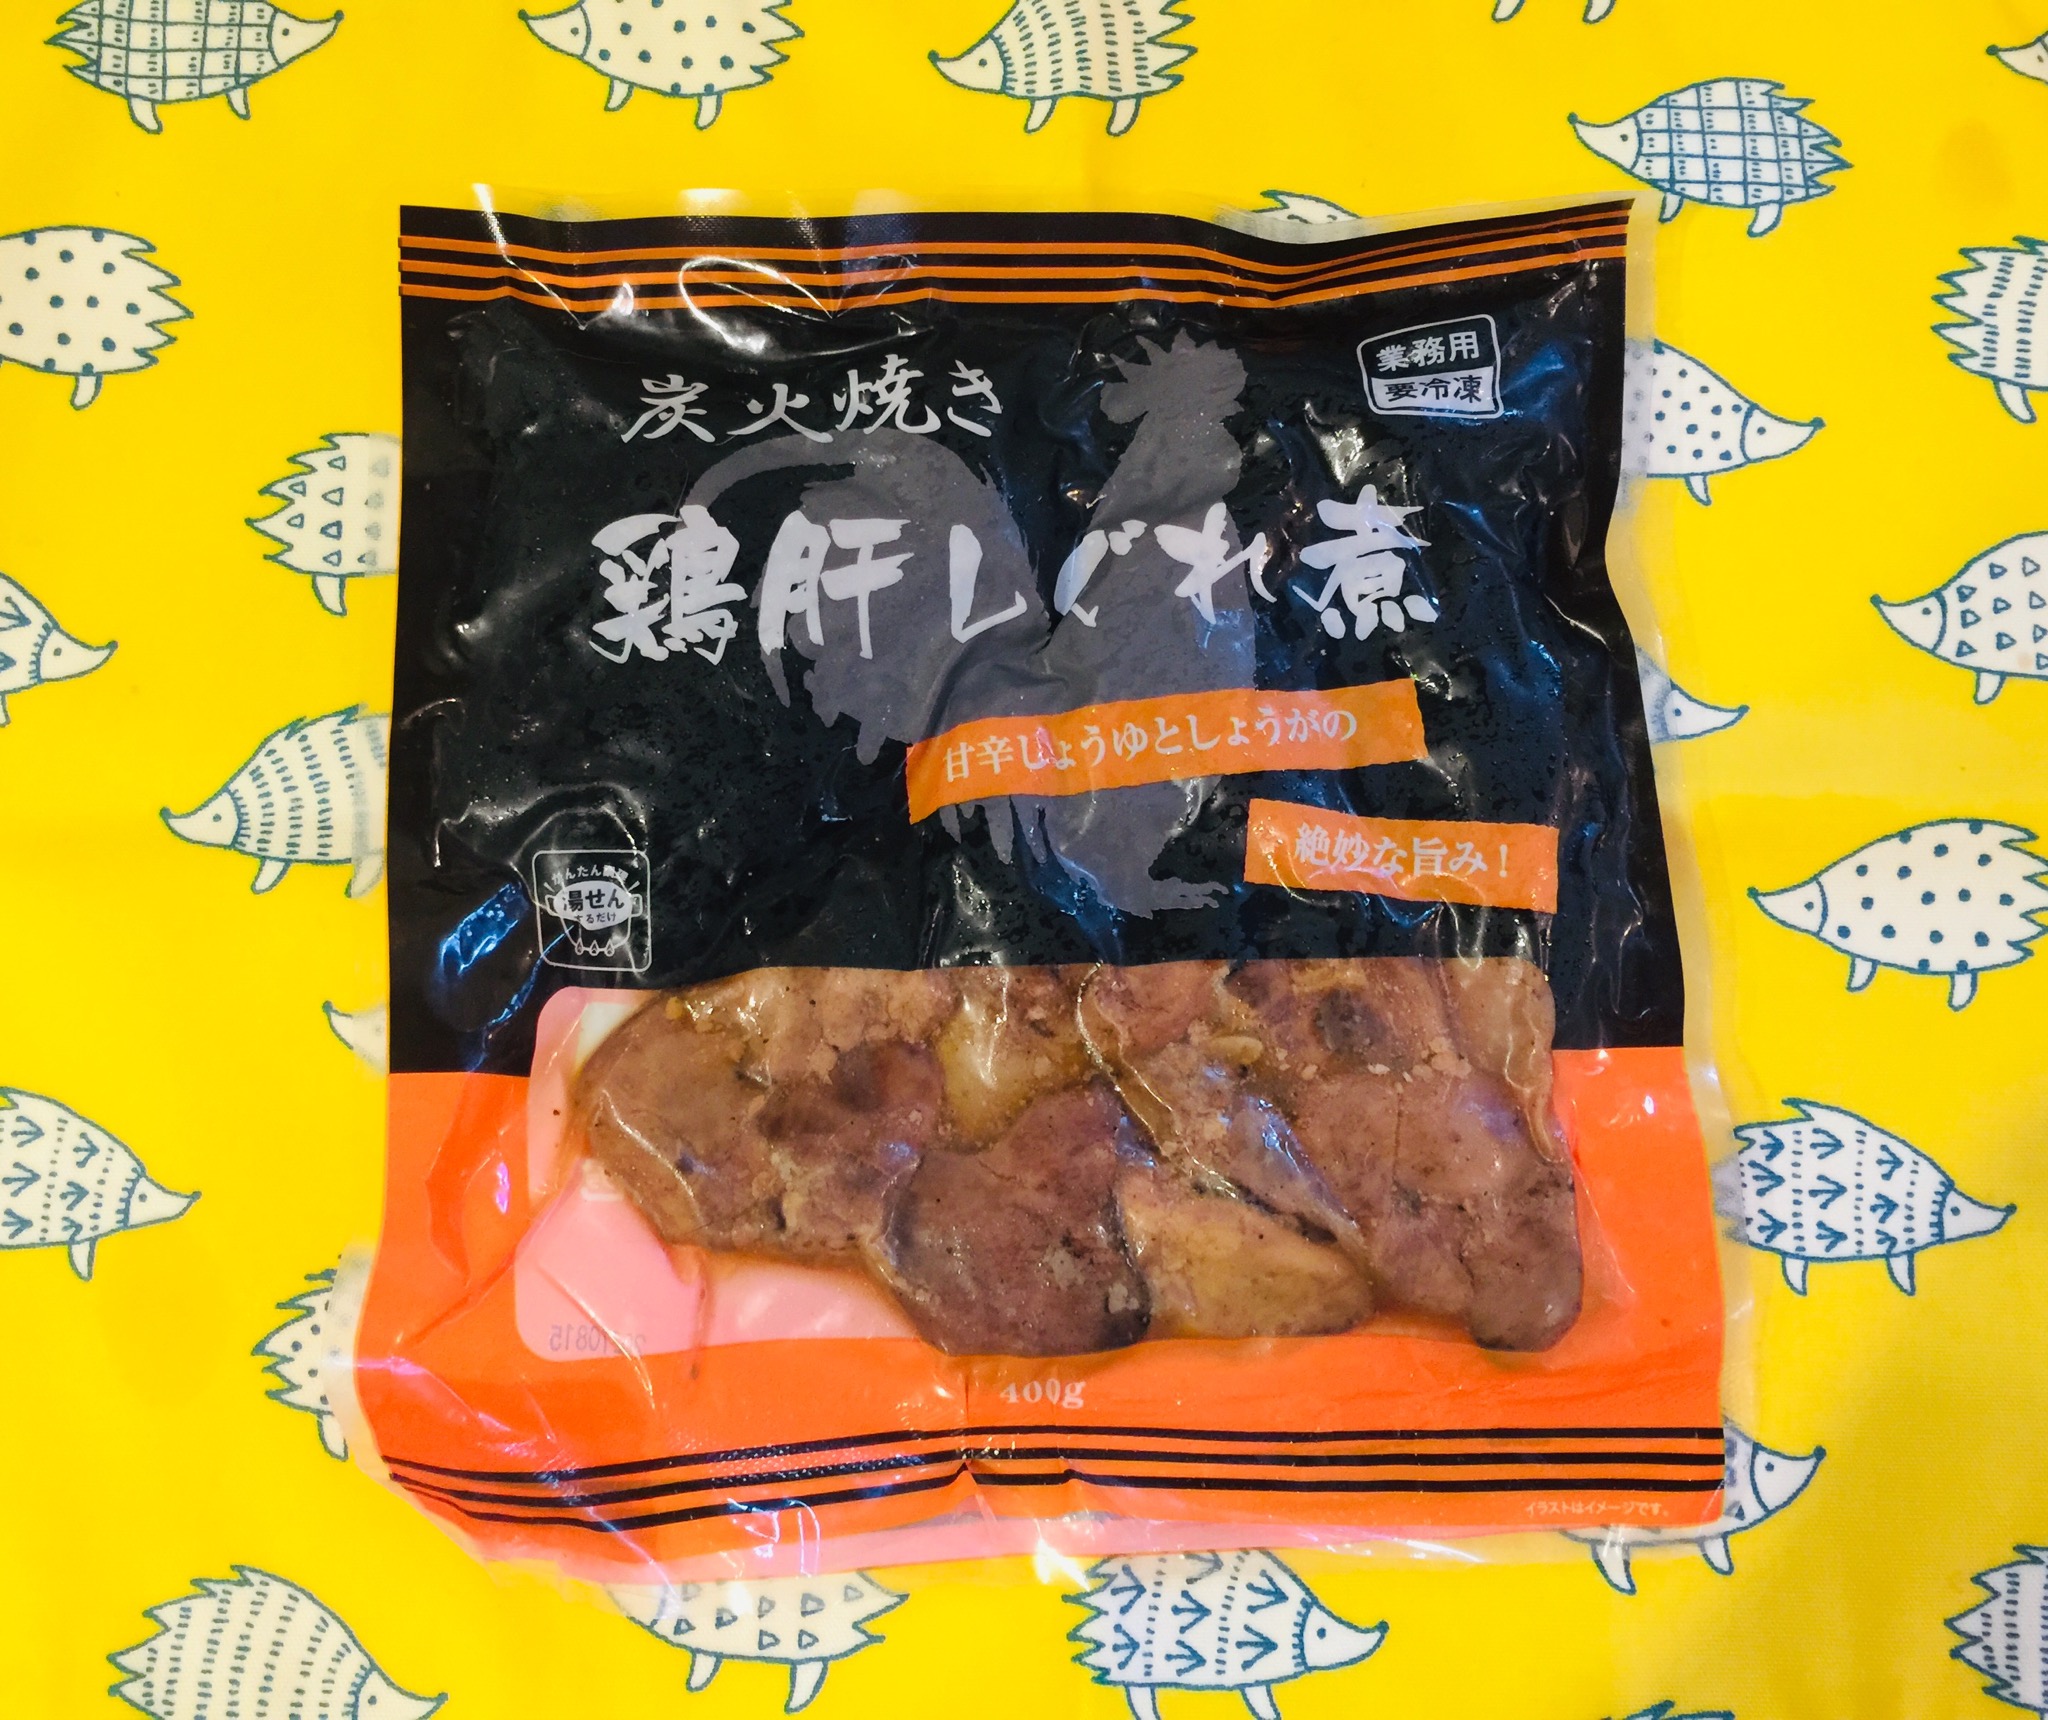 業務スーパー 冷凍炭火焼き 鶏肝しぐれ煮・中国産 | 業務スーパーの商品をレポートするブログ